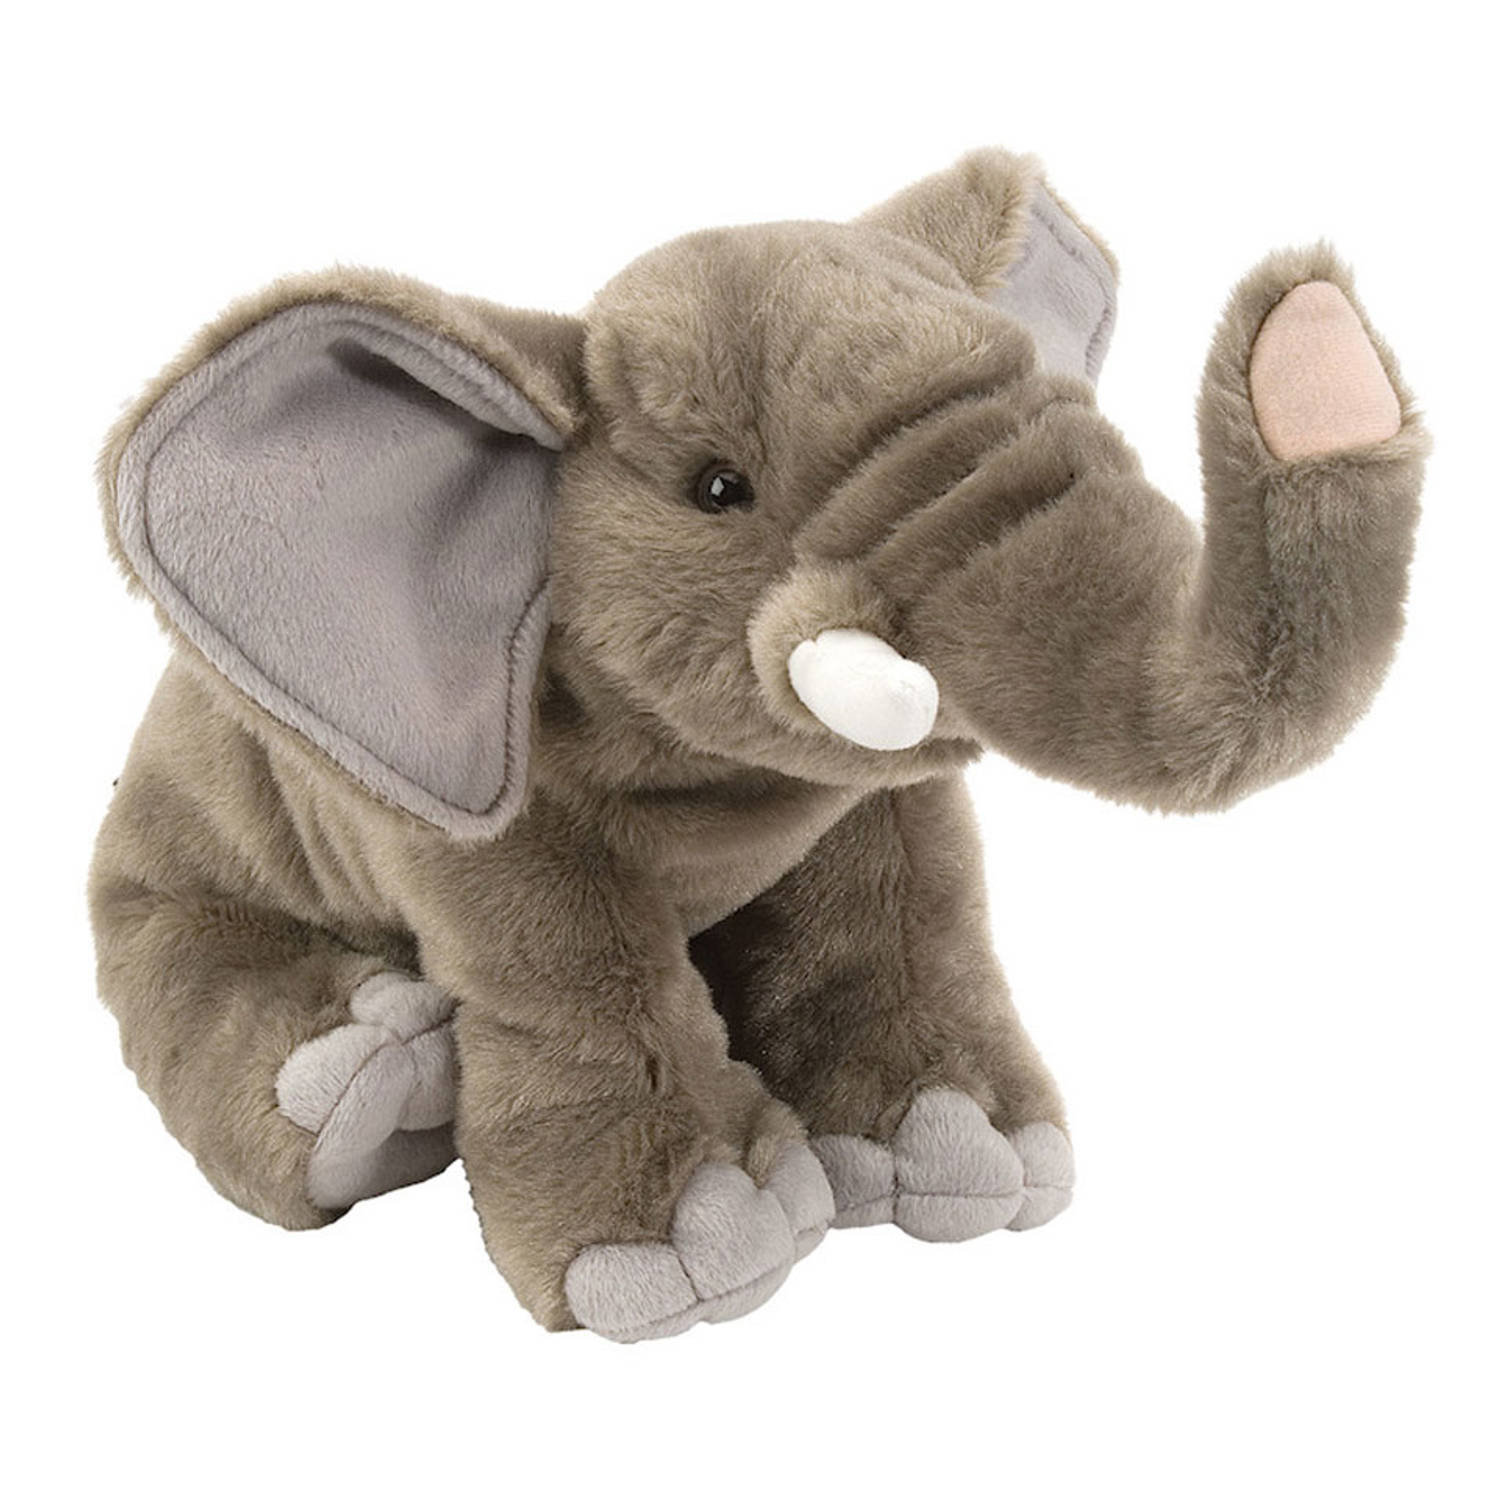 Cuddlekins: Elephant Adult 12 Inch